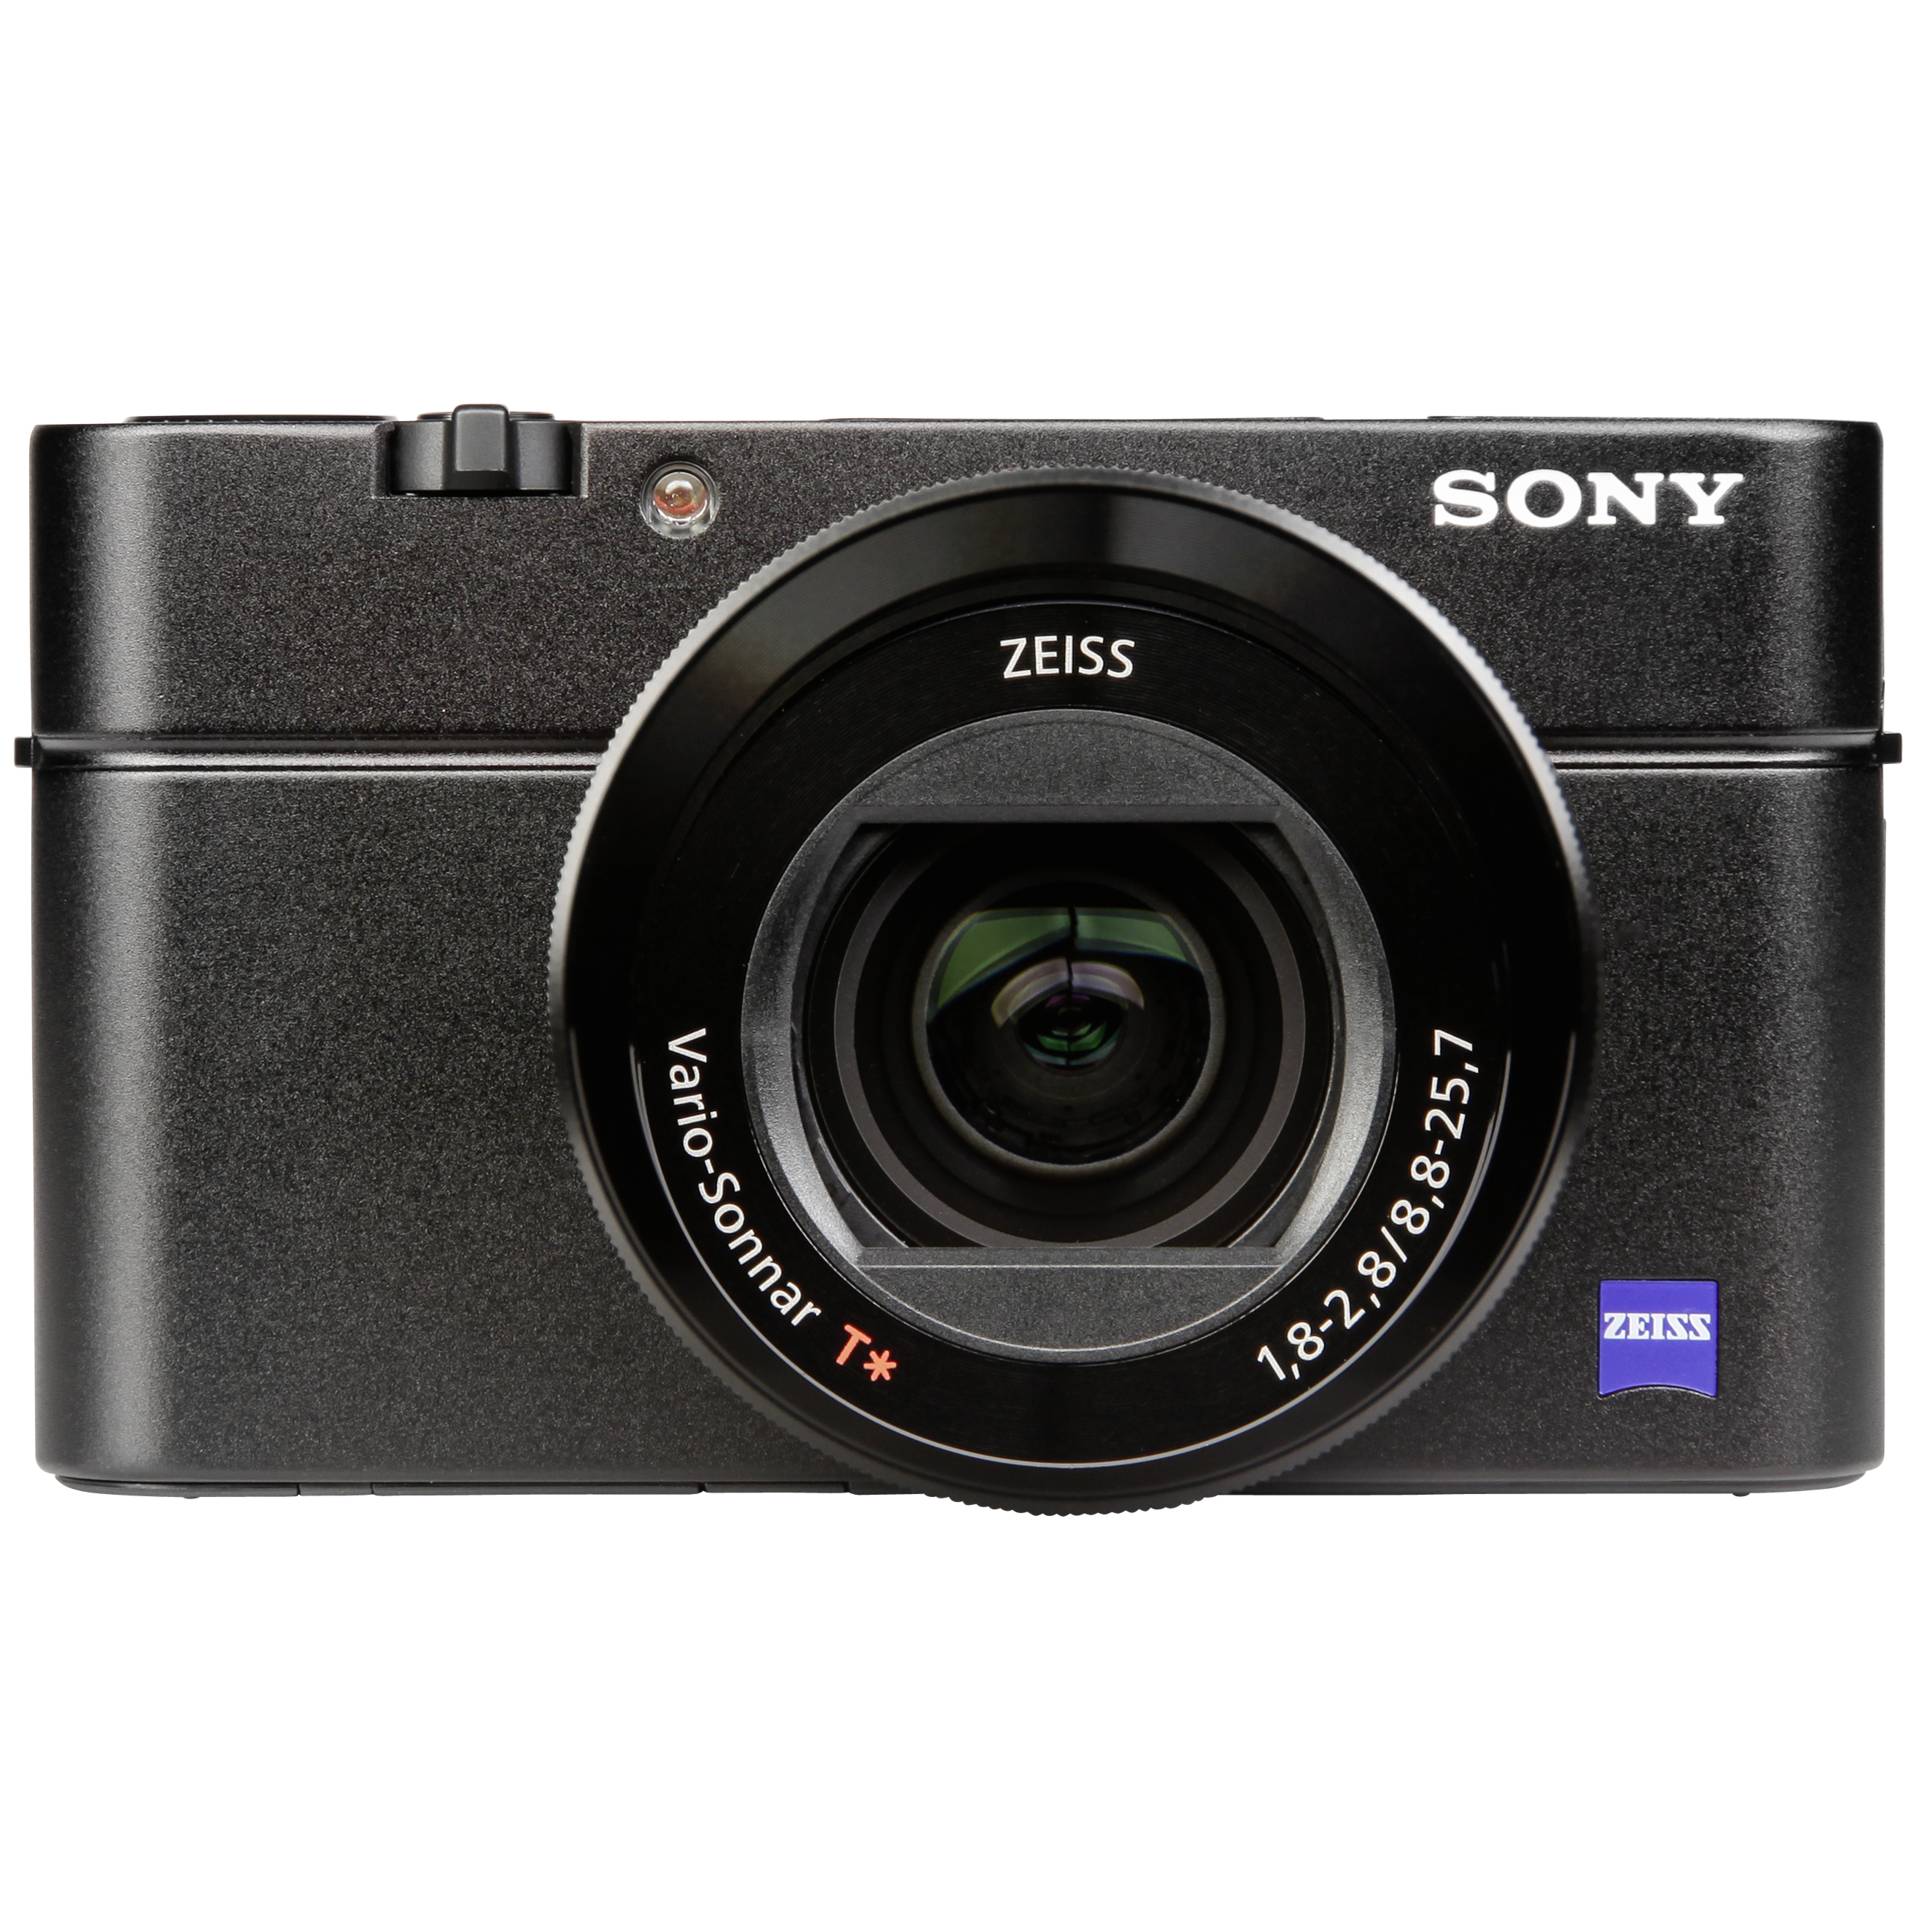 Sony Cyber-shot DSC-RX100 III 20.1Megapixel Sort Digitalkamera